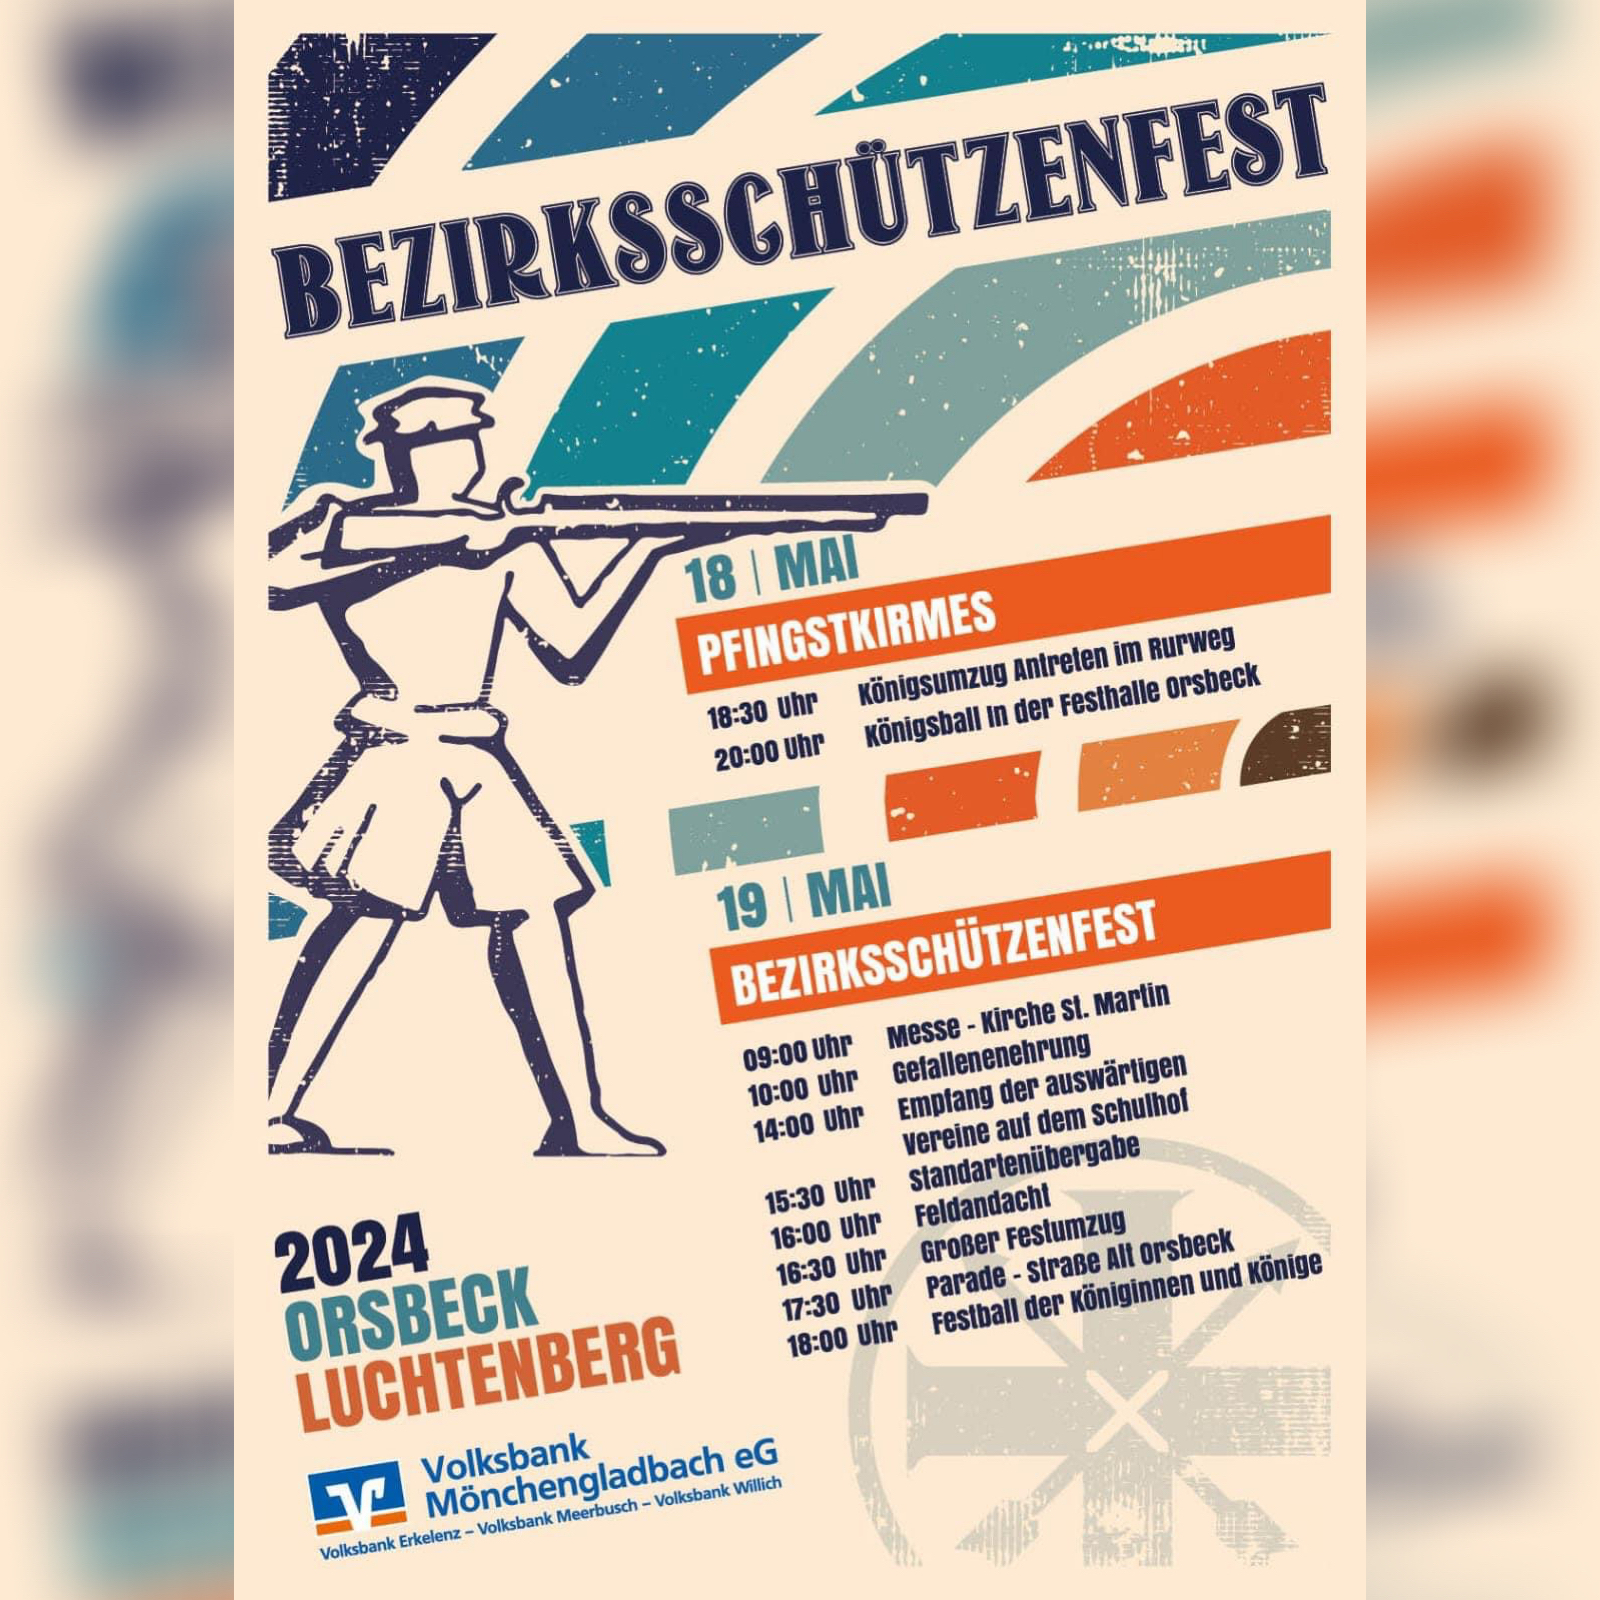 Pfingstkirmes & Bezirksschützenfest – Einladung